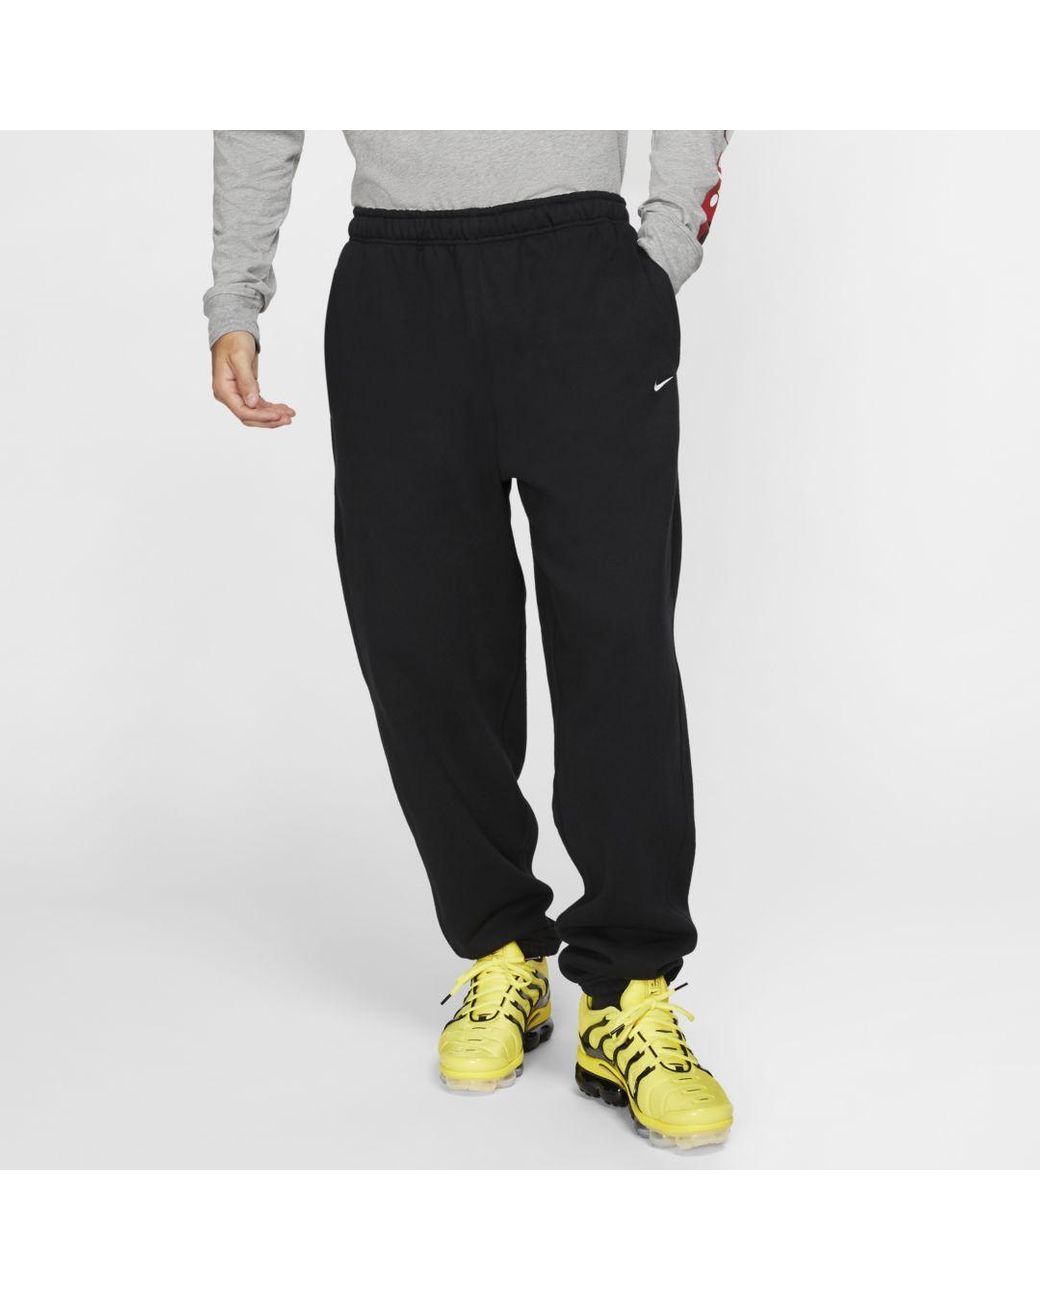 Nike Fleece Lab Pants in Black for Men - Lyst